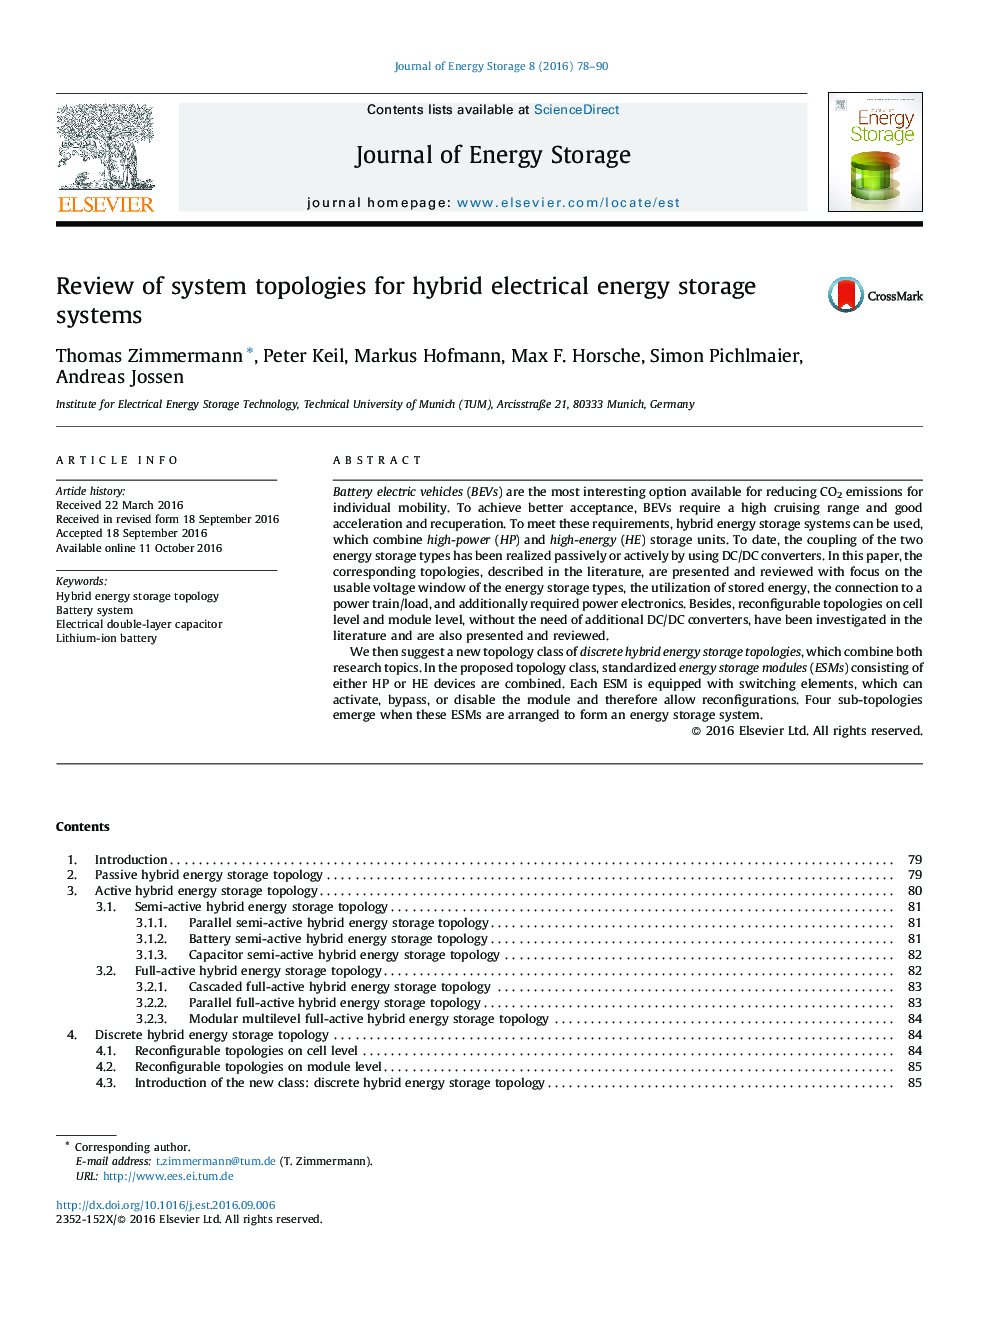 بررسی توپولوژی های سیستم برای سیستم های ذخیره انرژی الکتریکی هیبریدی 